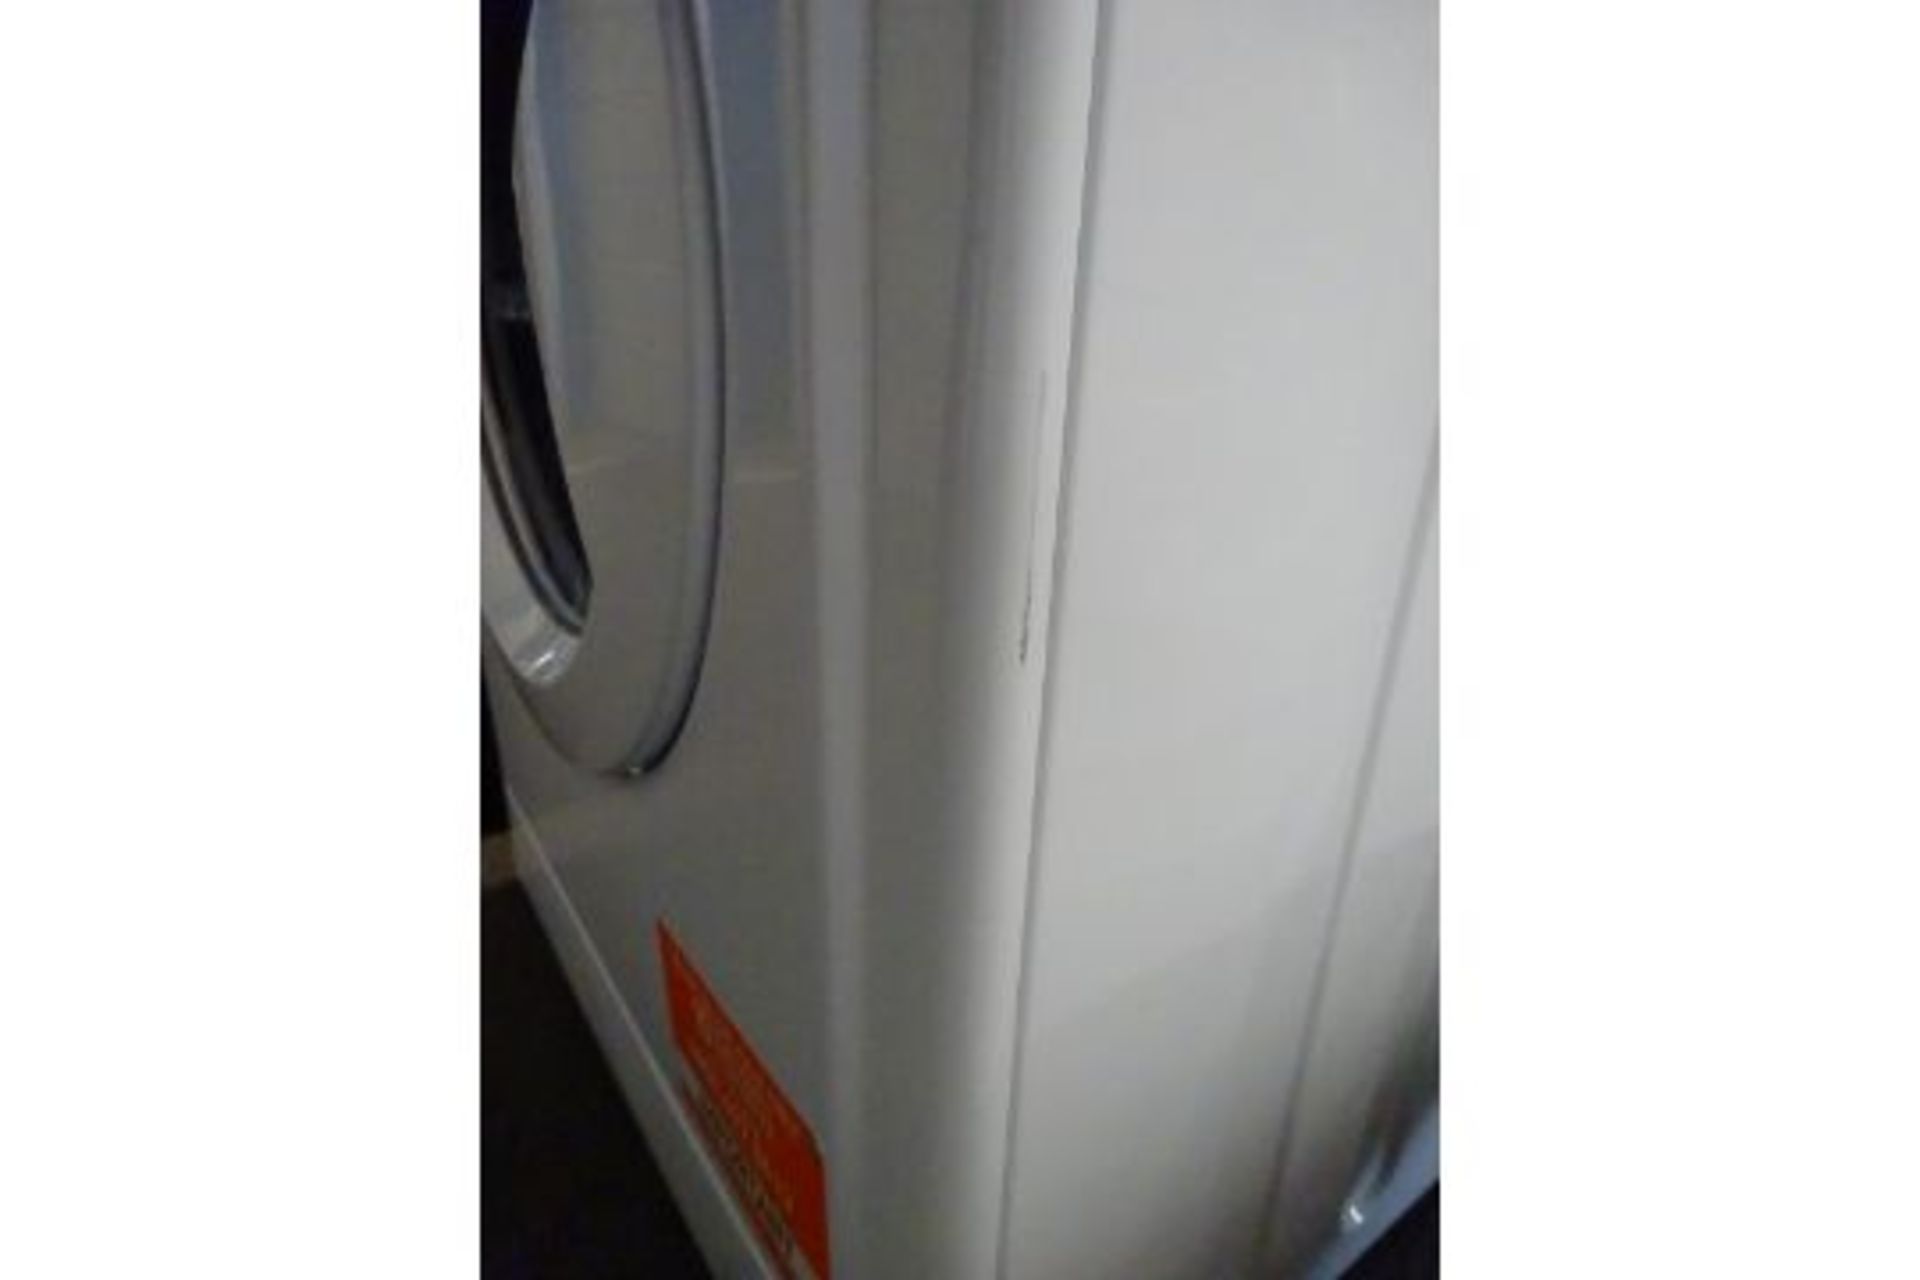 Indesit EcoTime IWC71252W 7KG Washing Machine - White - ARGOS RRP £199.99 - Image 5 of 5